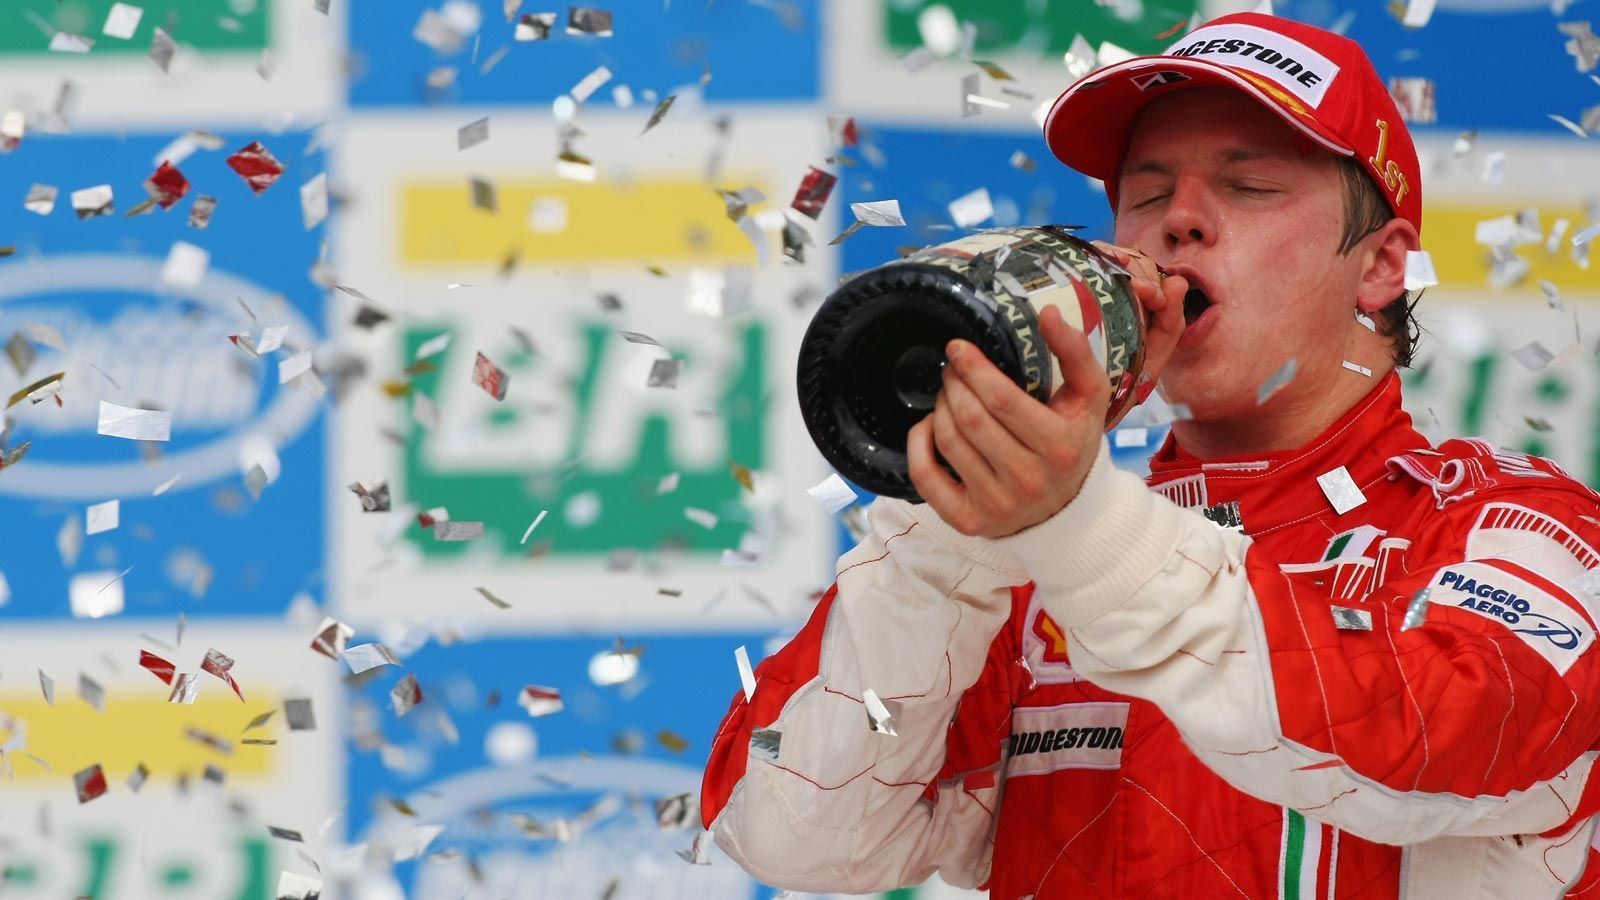 
                <strong>Kimi Räikkönen vs. Fernando Alonso vs. Lewis Hamilton (2007)</strong><br>
                Kimi Räikkönen ging als absoluter Außenseiter ins Saisonfinale 2007. Durch einen Dreher von Lewis Hamilton, der das Rennen dadurch nur auf Platz sieben beendete, und einen dritten Platz von dessen Teamkollegen Fernando Alonso wurde das Märchen doch noch war. Der Finne raste bei widrigen Bedingungen zum Sieg und feierte mit einem Punkt Vorsprung seinen ersten und einzigen Titel. Bis heute ist es der letzte Fahrer-Titel für das traditionsreiche Ferrari-Team. 
              